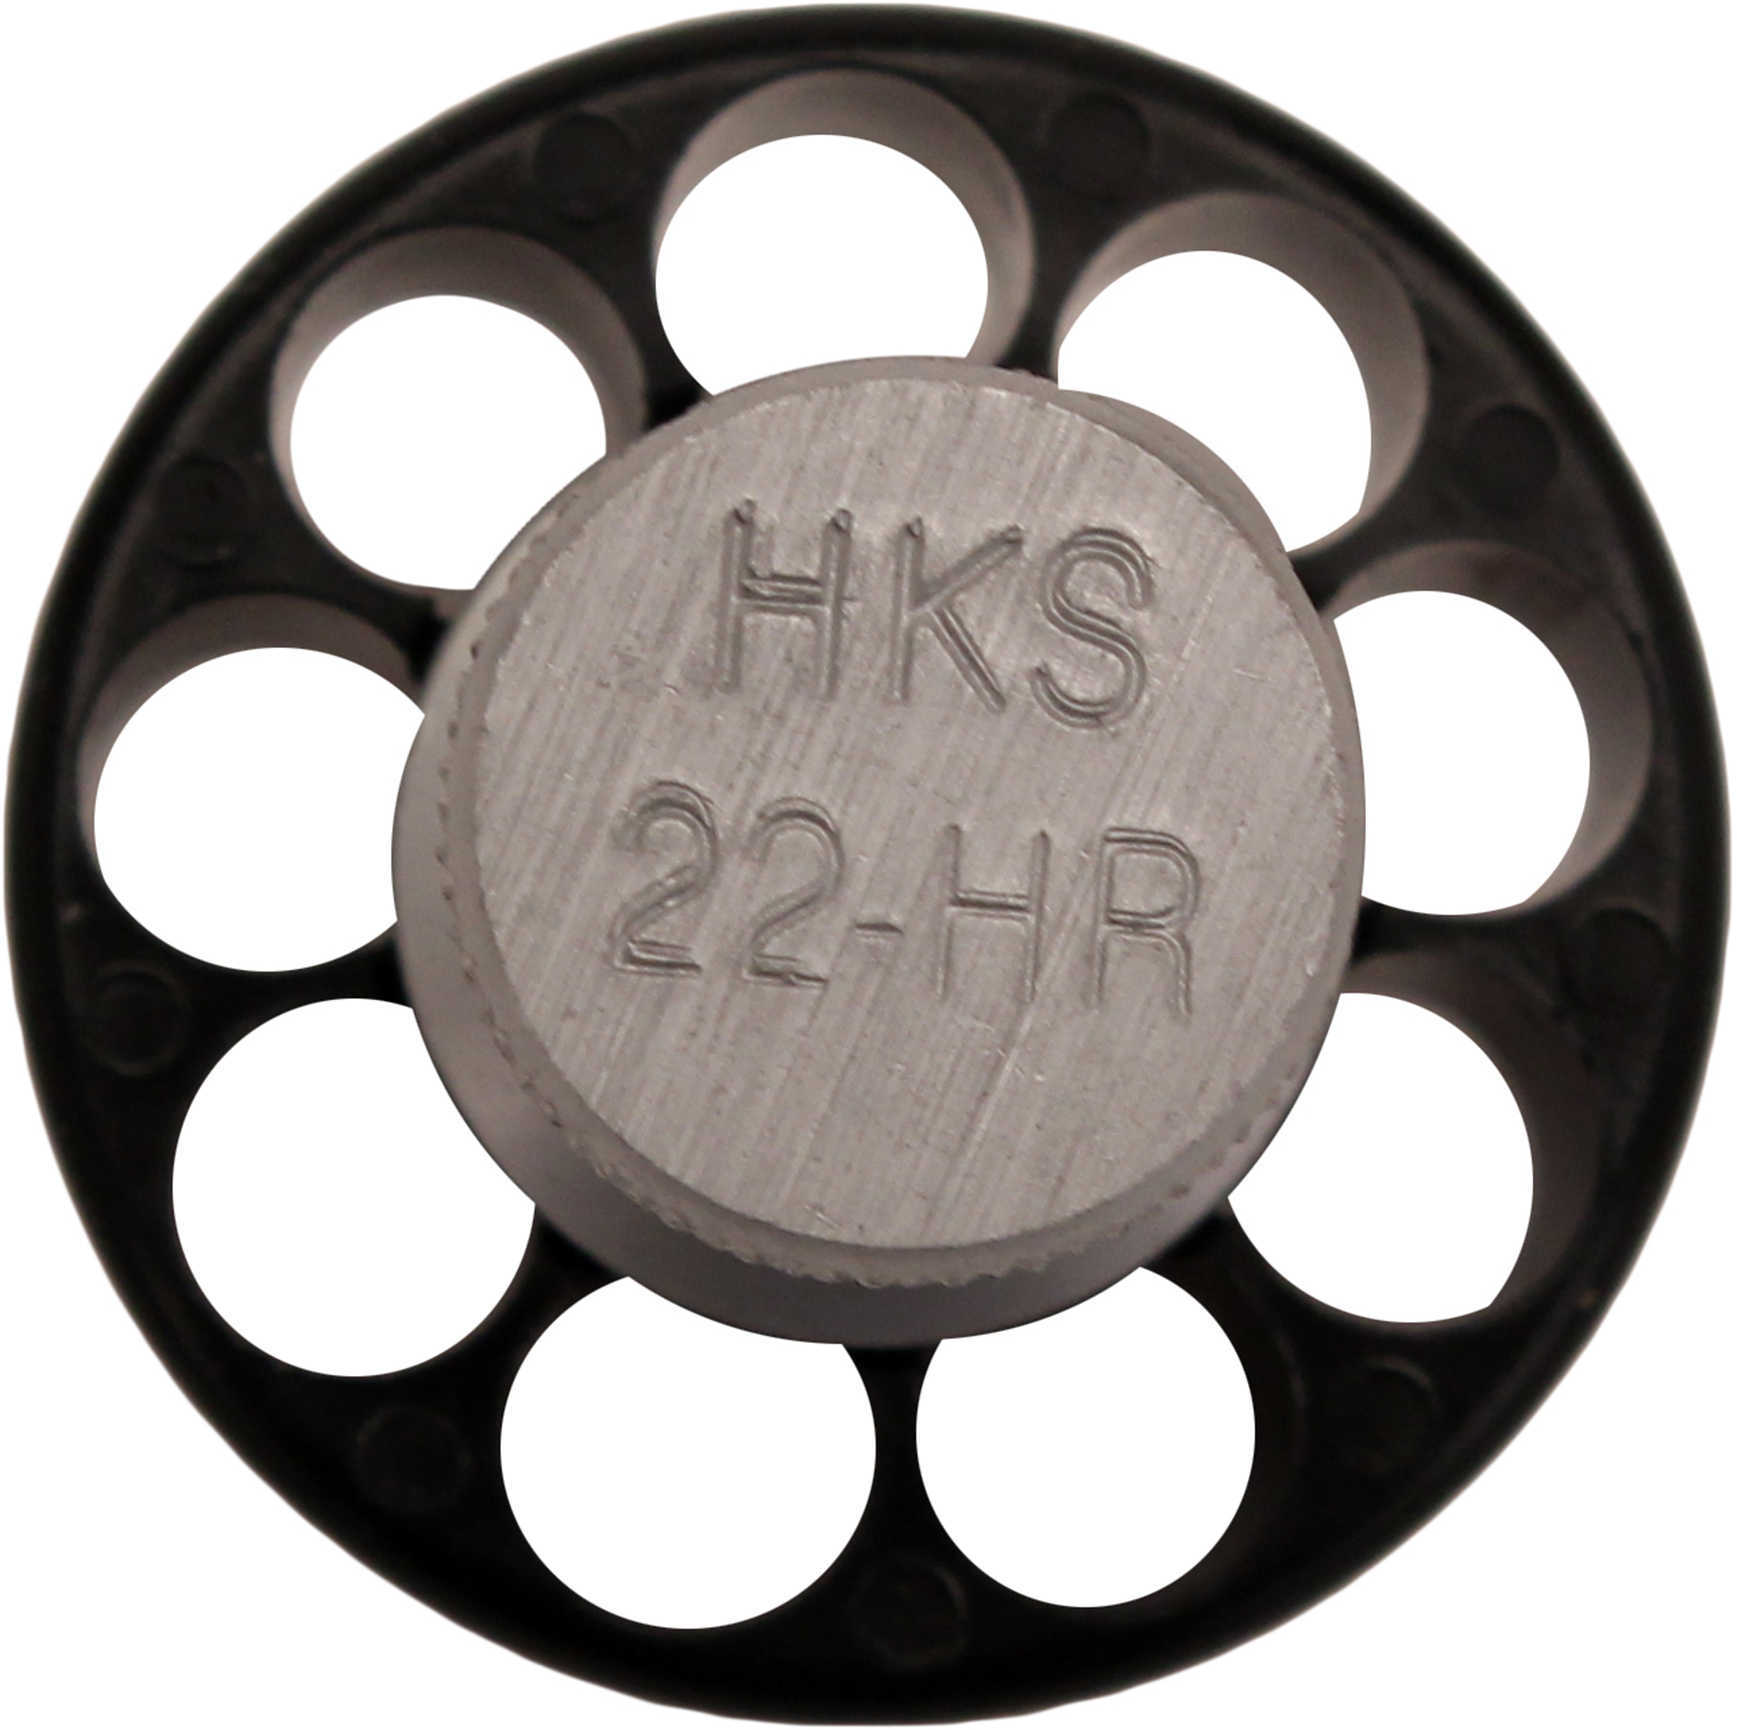 HKS Speedloader 22LR Fits Taurus 94 H&R Black 22HR